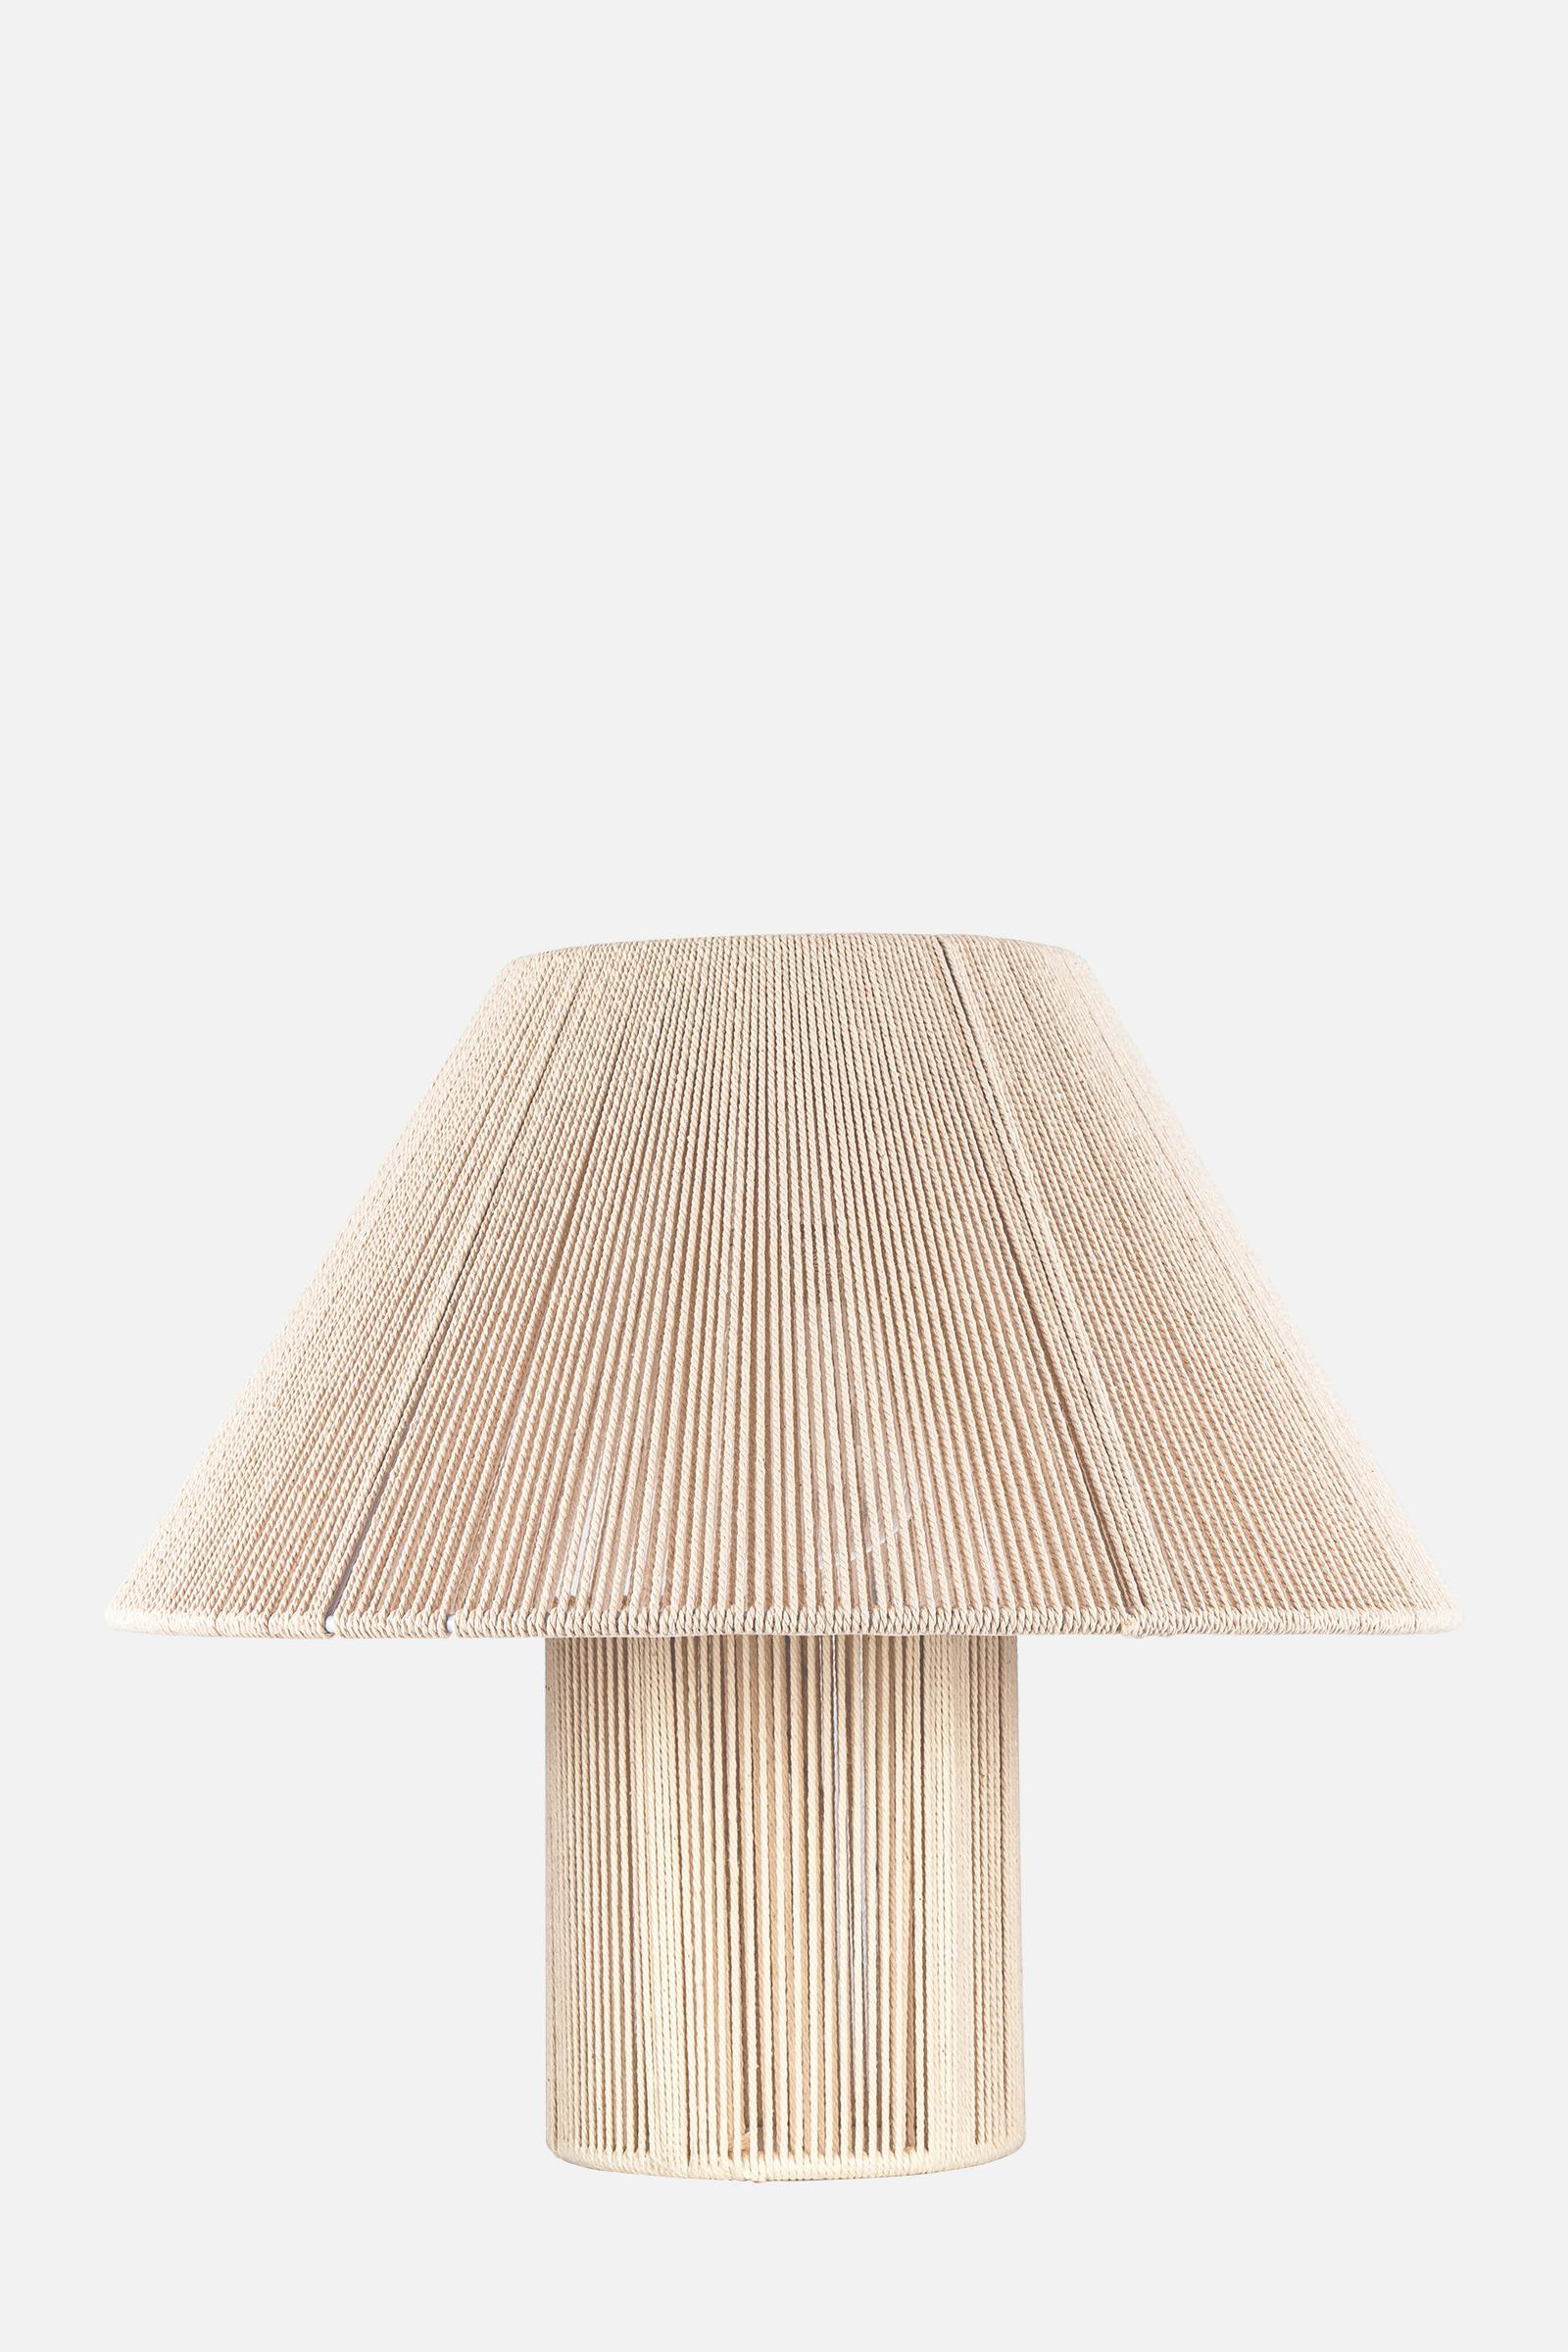 Table Lamp Anna 35